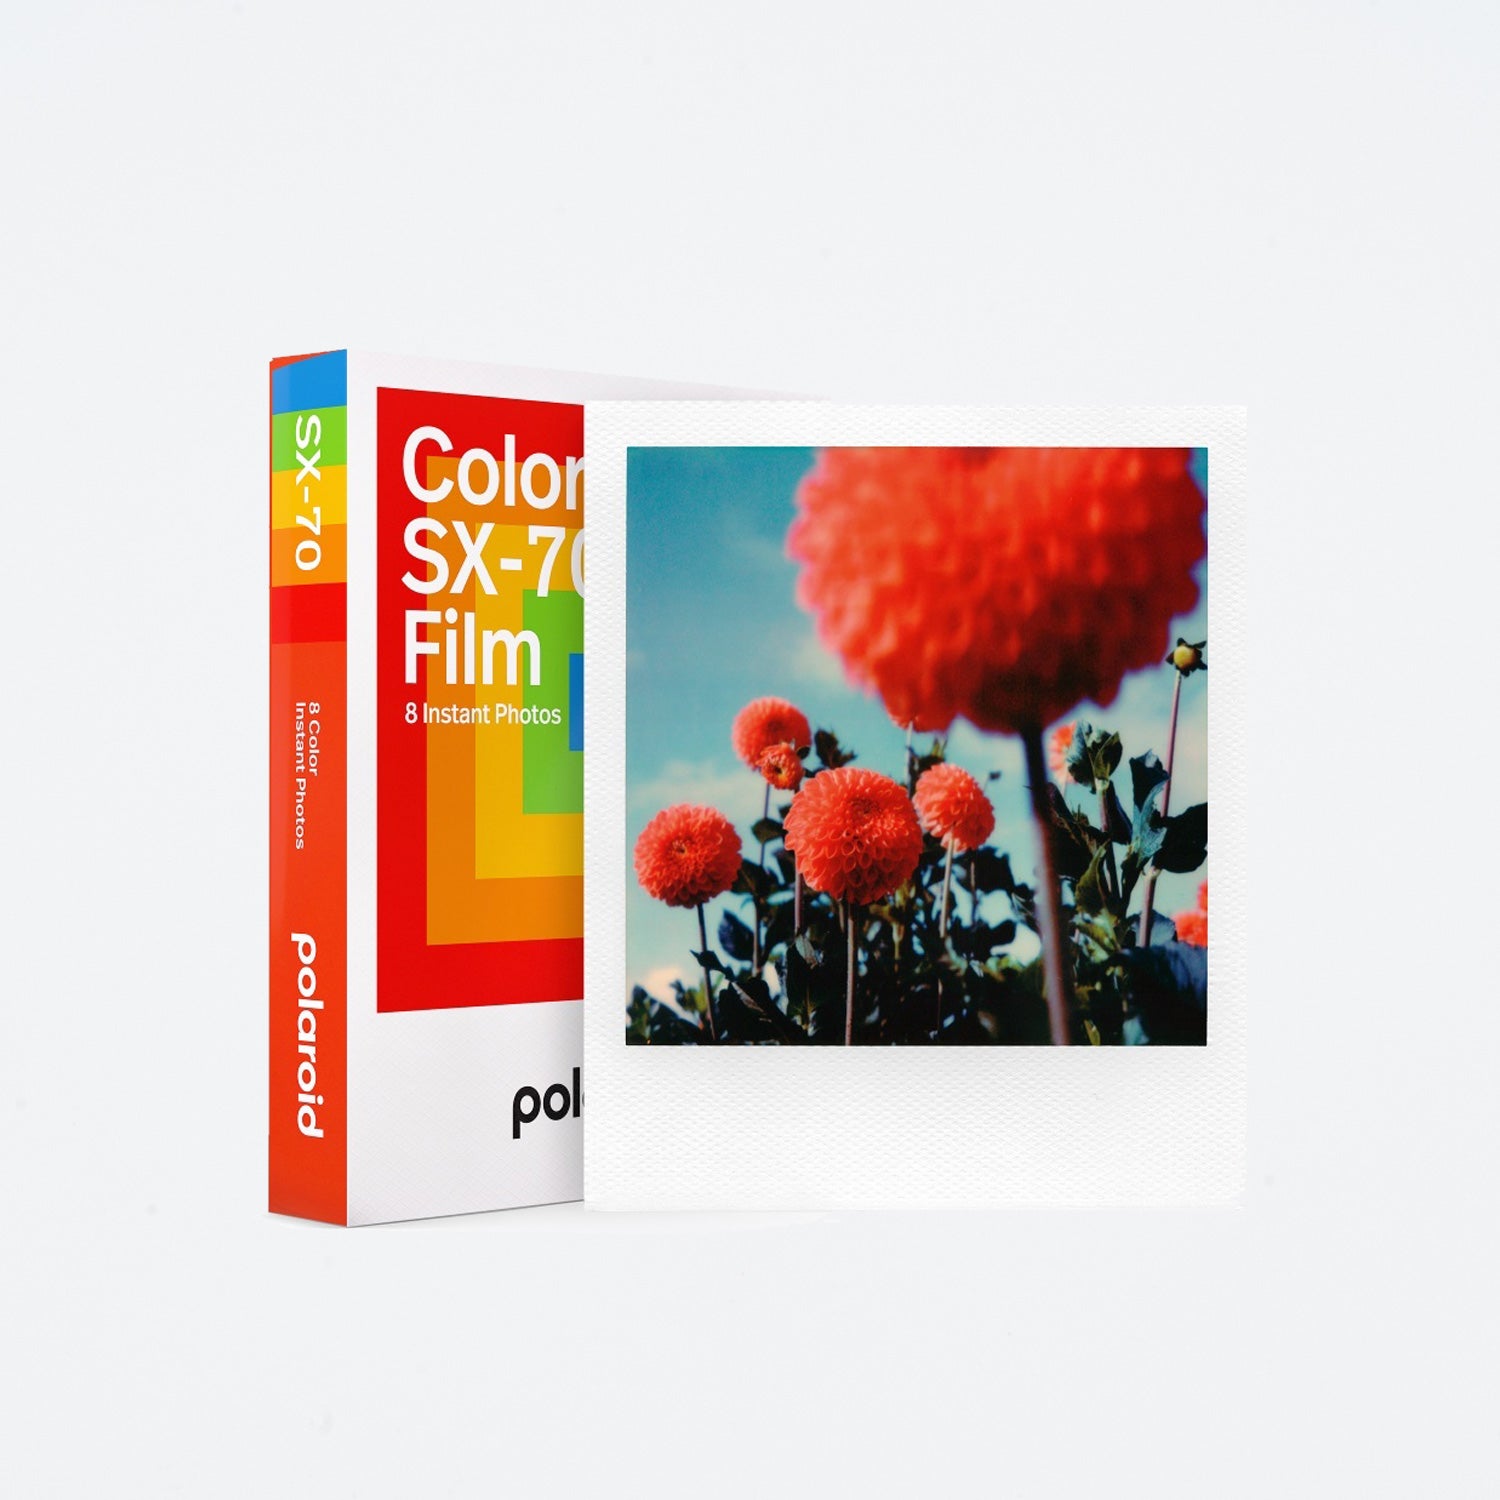 Polaroid SX-70 Color film